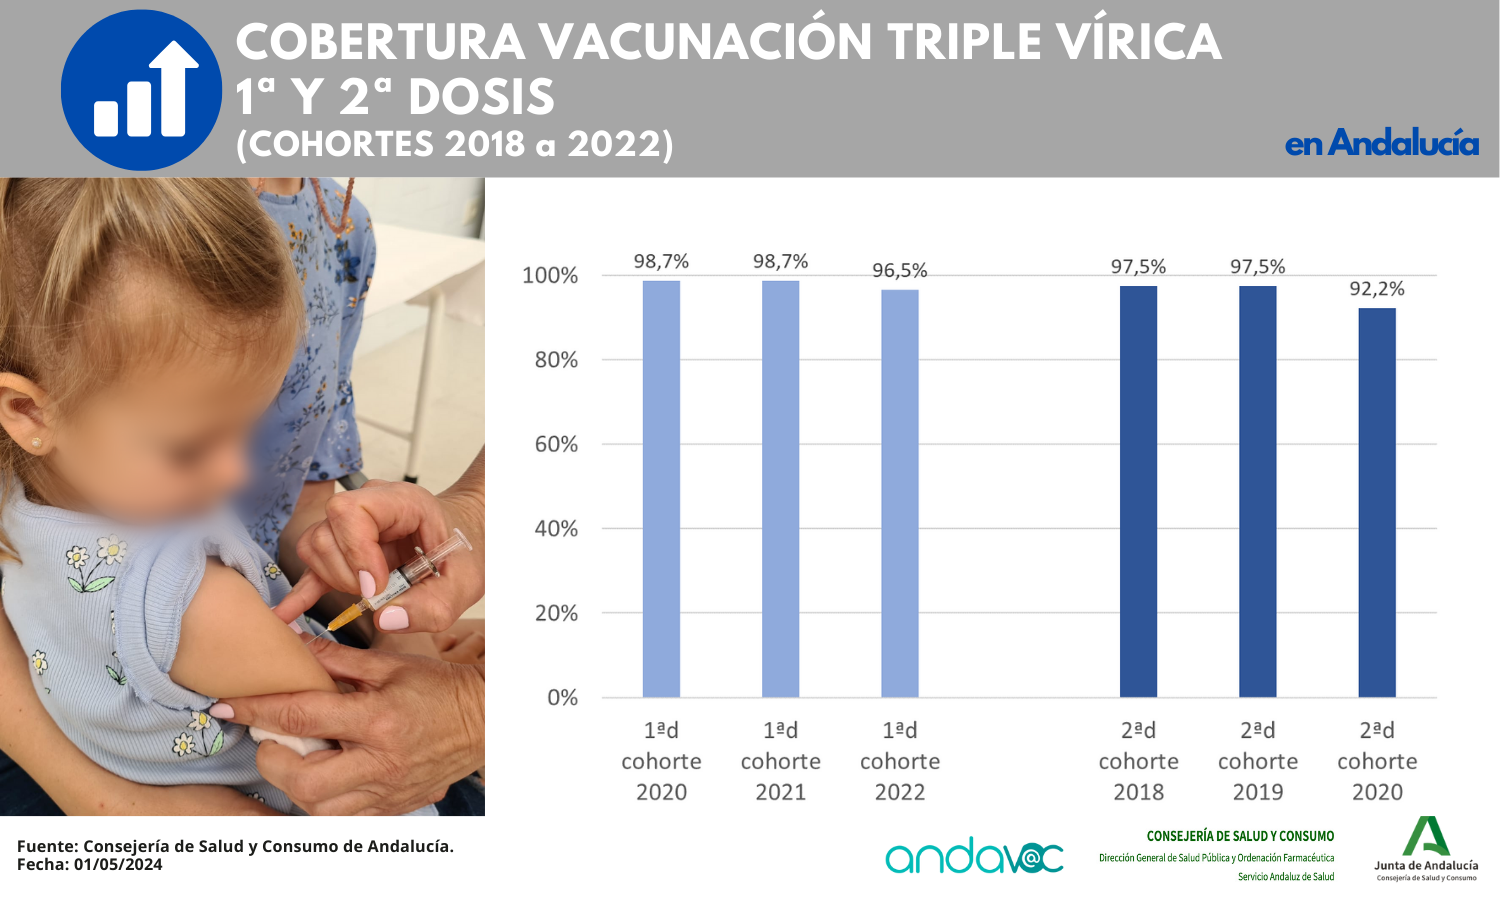 Cobertura vacunal triple vírica – 1ª y 2ª dosis – en Andalucía